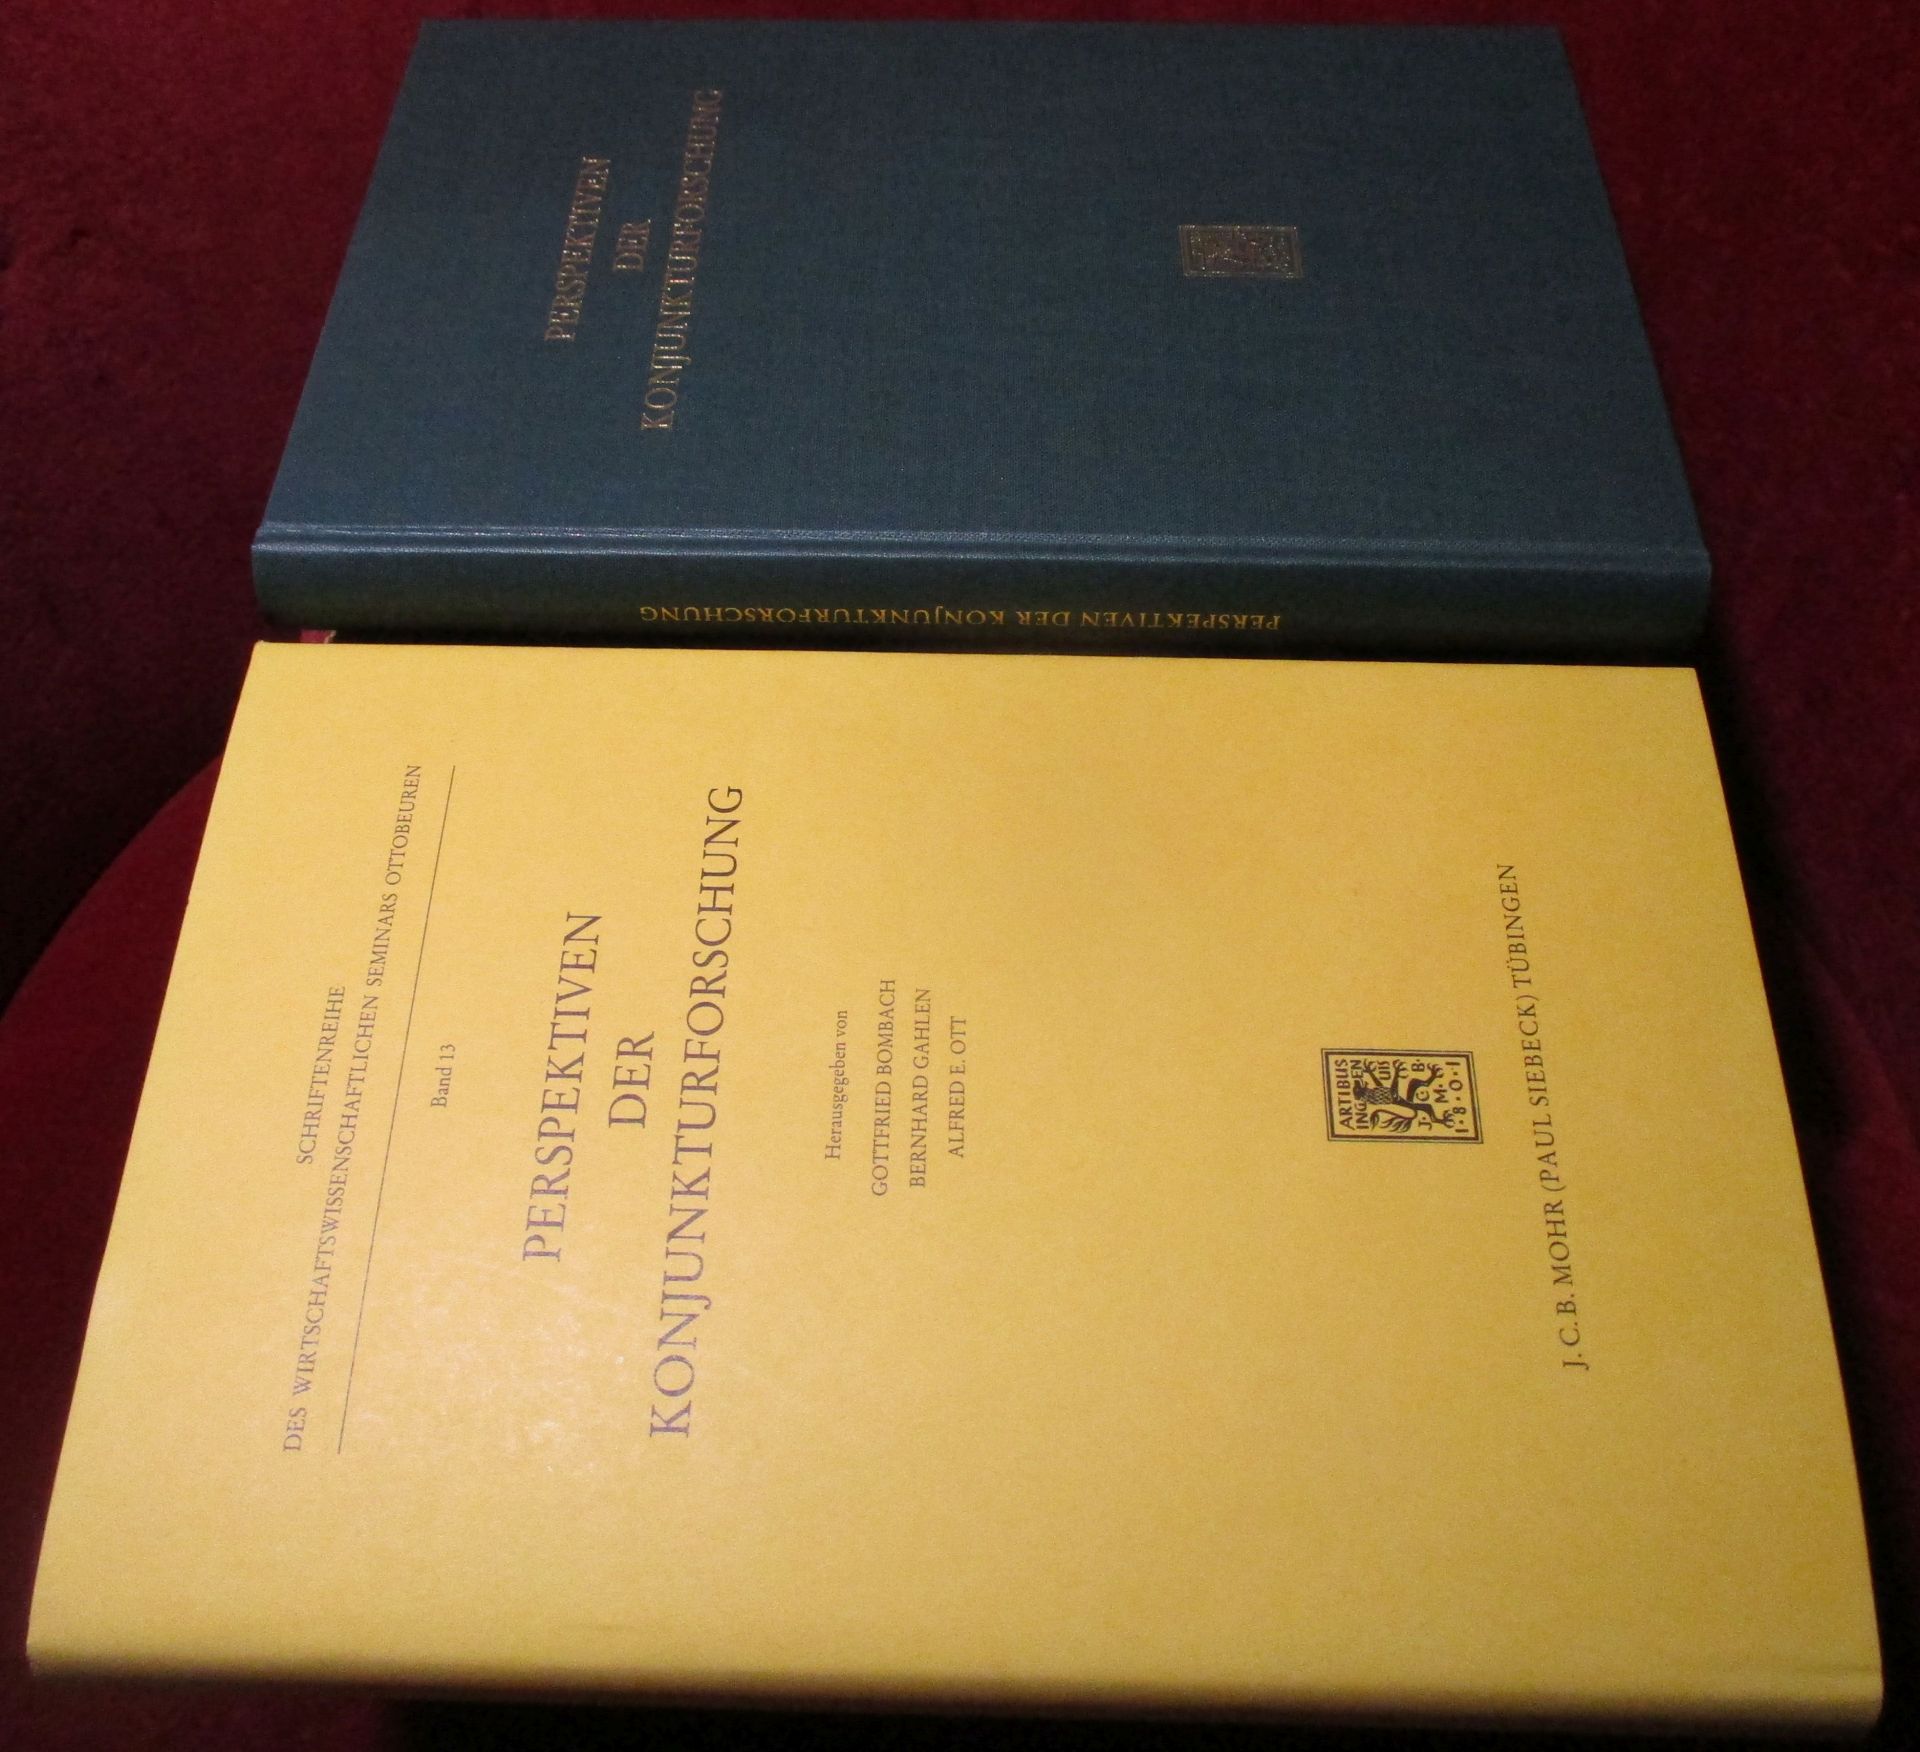 Herausgegeben von Gottfried Bombach., Bernhard Gahlen, Alfred Ott. Perspektiven der Konjunkturforschung